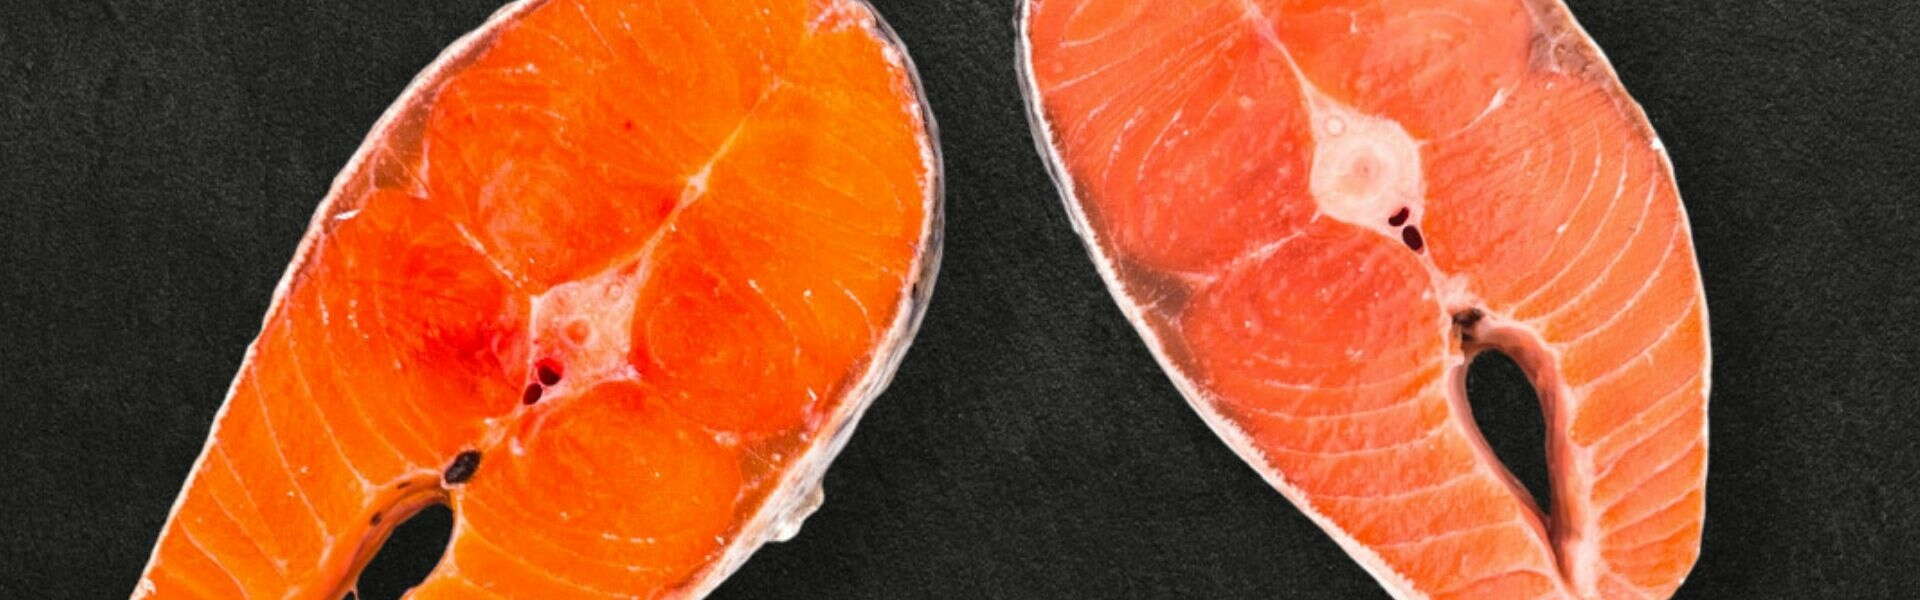 D'où vient votre saumon? Les différences entre le saumon d'élevage et le saumon sauvage